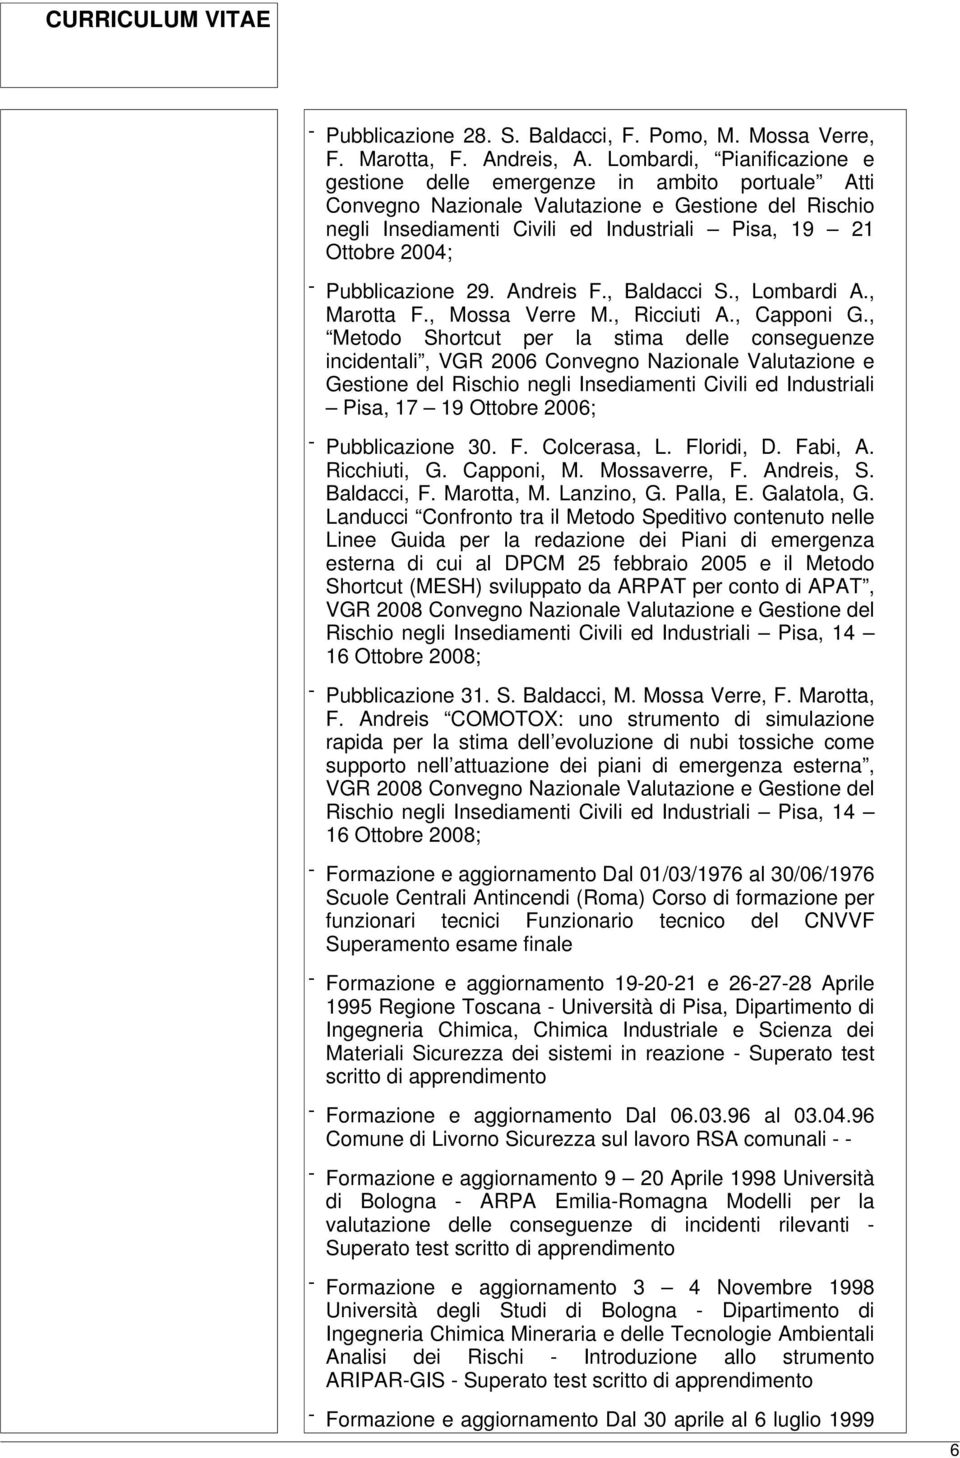 Pubblicazione 29. Andreis F., Baldacci S., Lombardi A., Marotta F., Mossa Verre M., Ricciuti A., Capponi G.